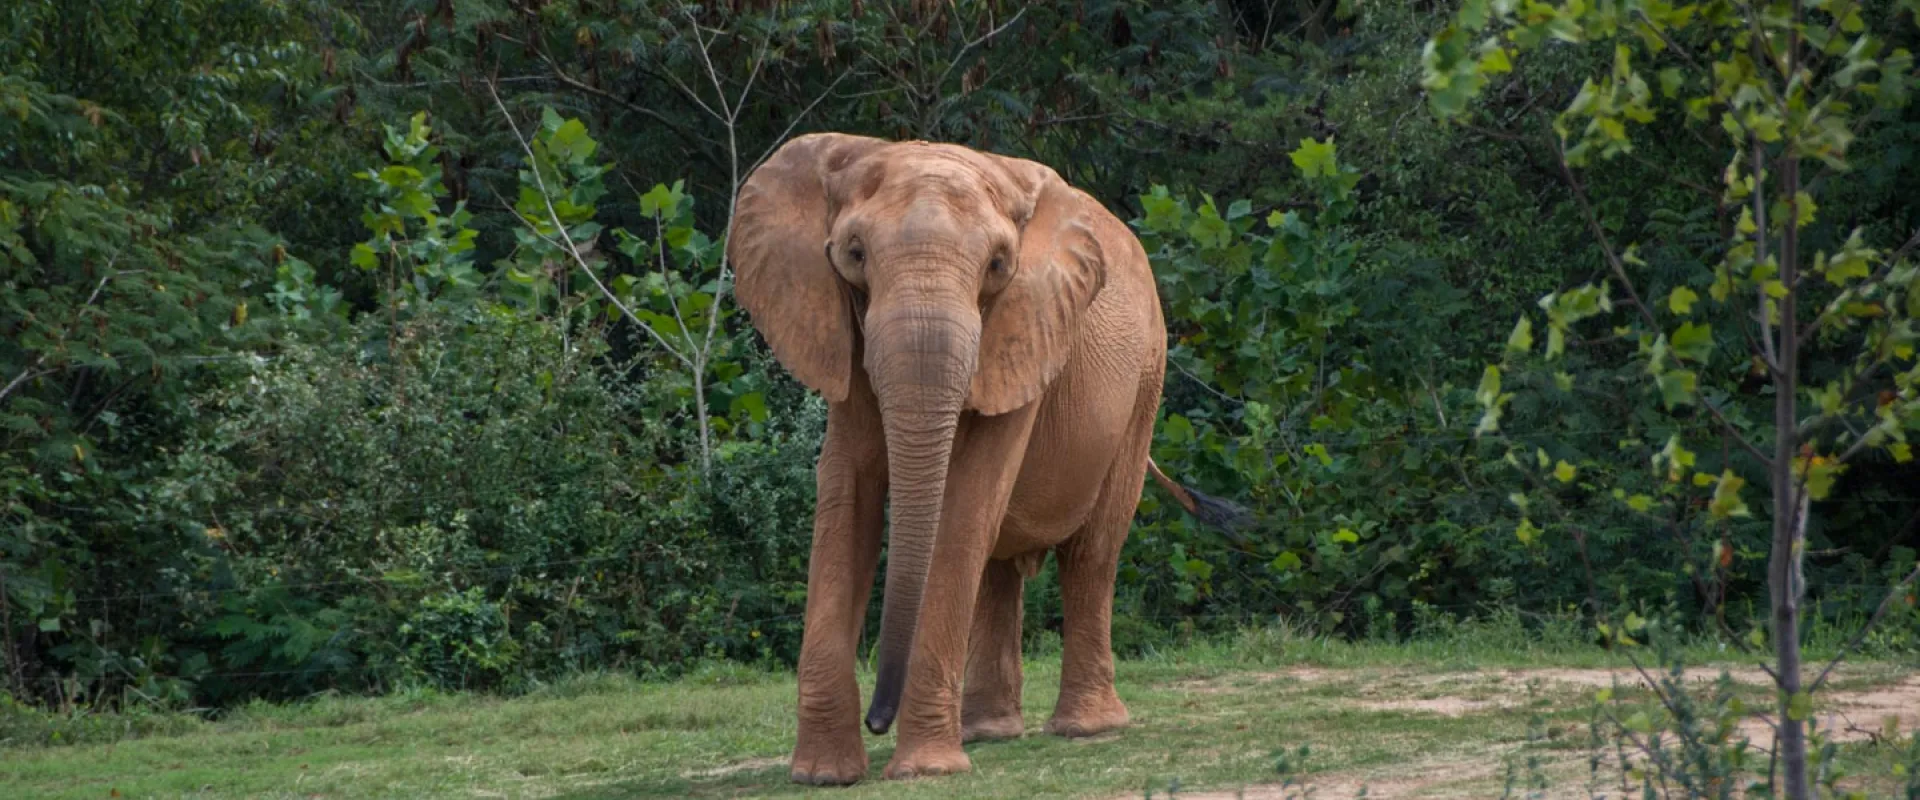 Elephant-Sized Pedicure